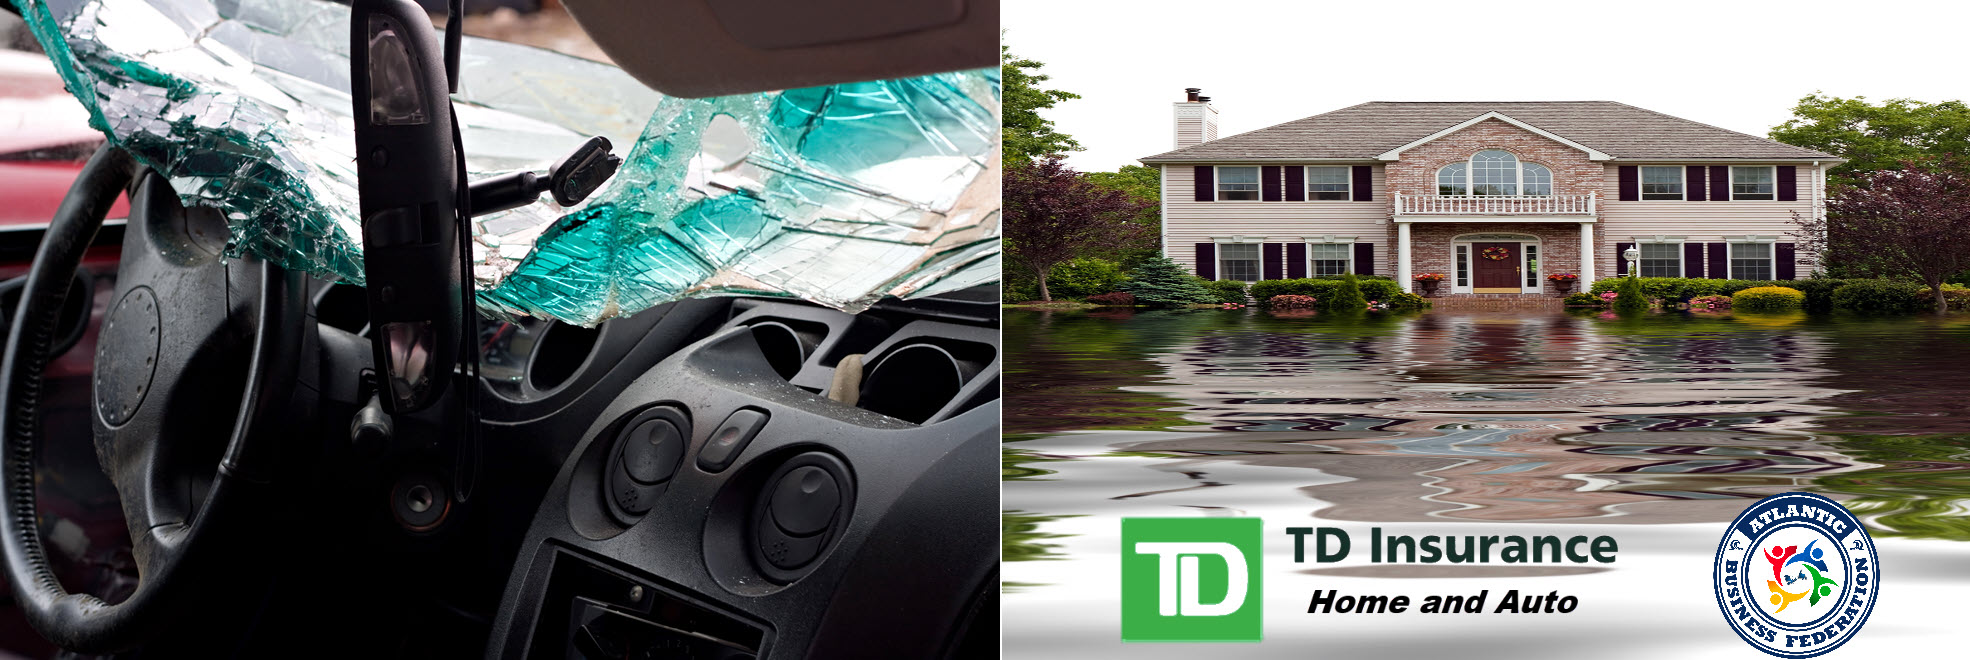 Affordable Home & Auto Insurance, Nova Scotia